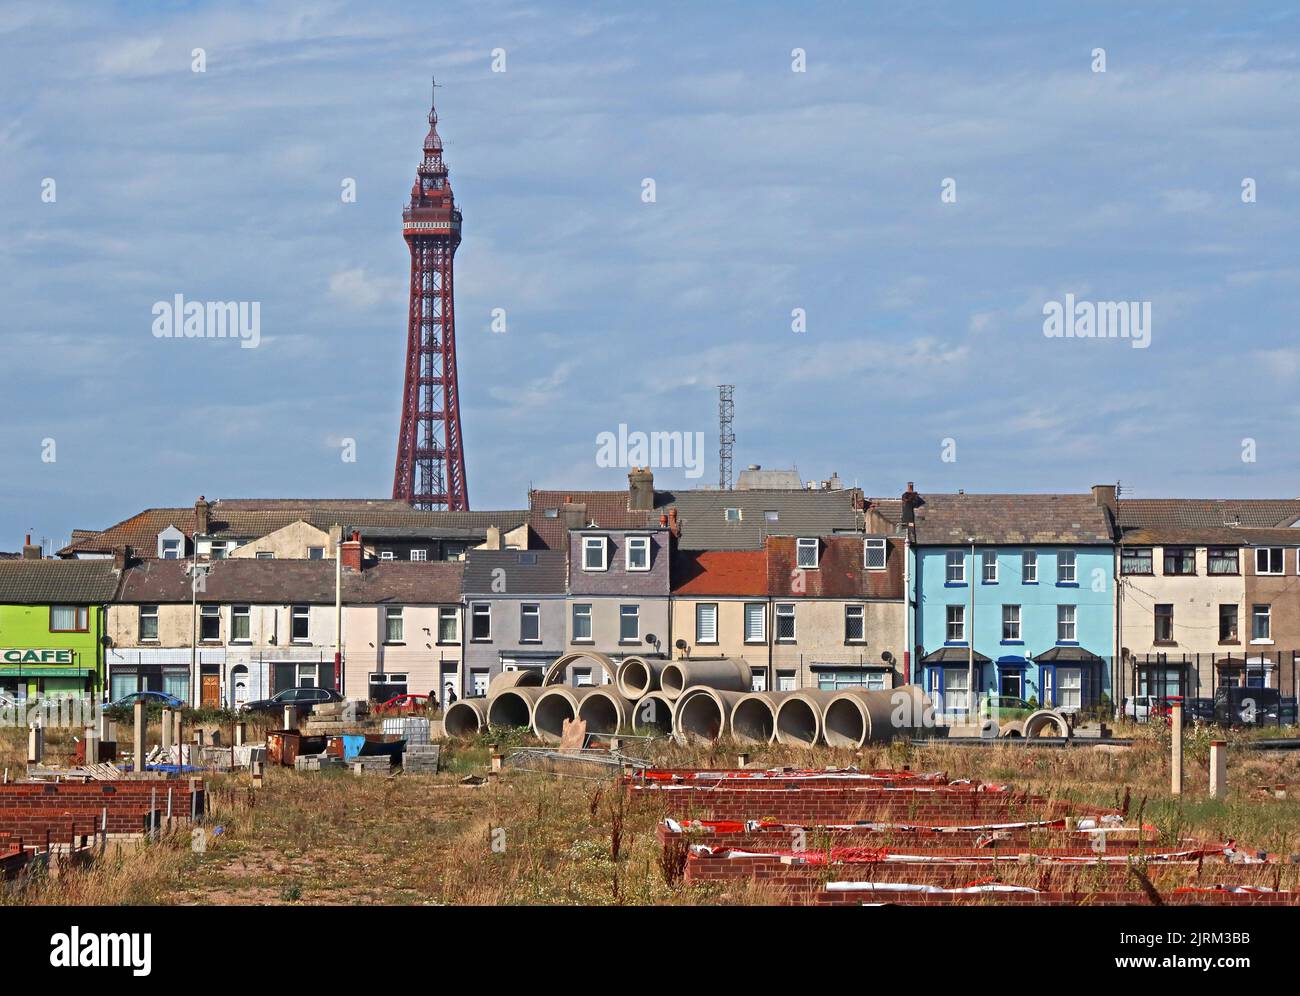 Wasteland, à proximité de Rigby Road, Blackpool, Lancashire, Angleterre, Royaume-Uni, FY1 5DD ans, avec Blackpool Tower en arrière-plan Banque D'Images